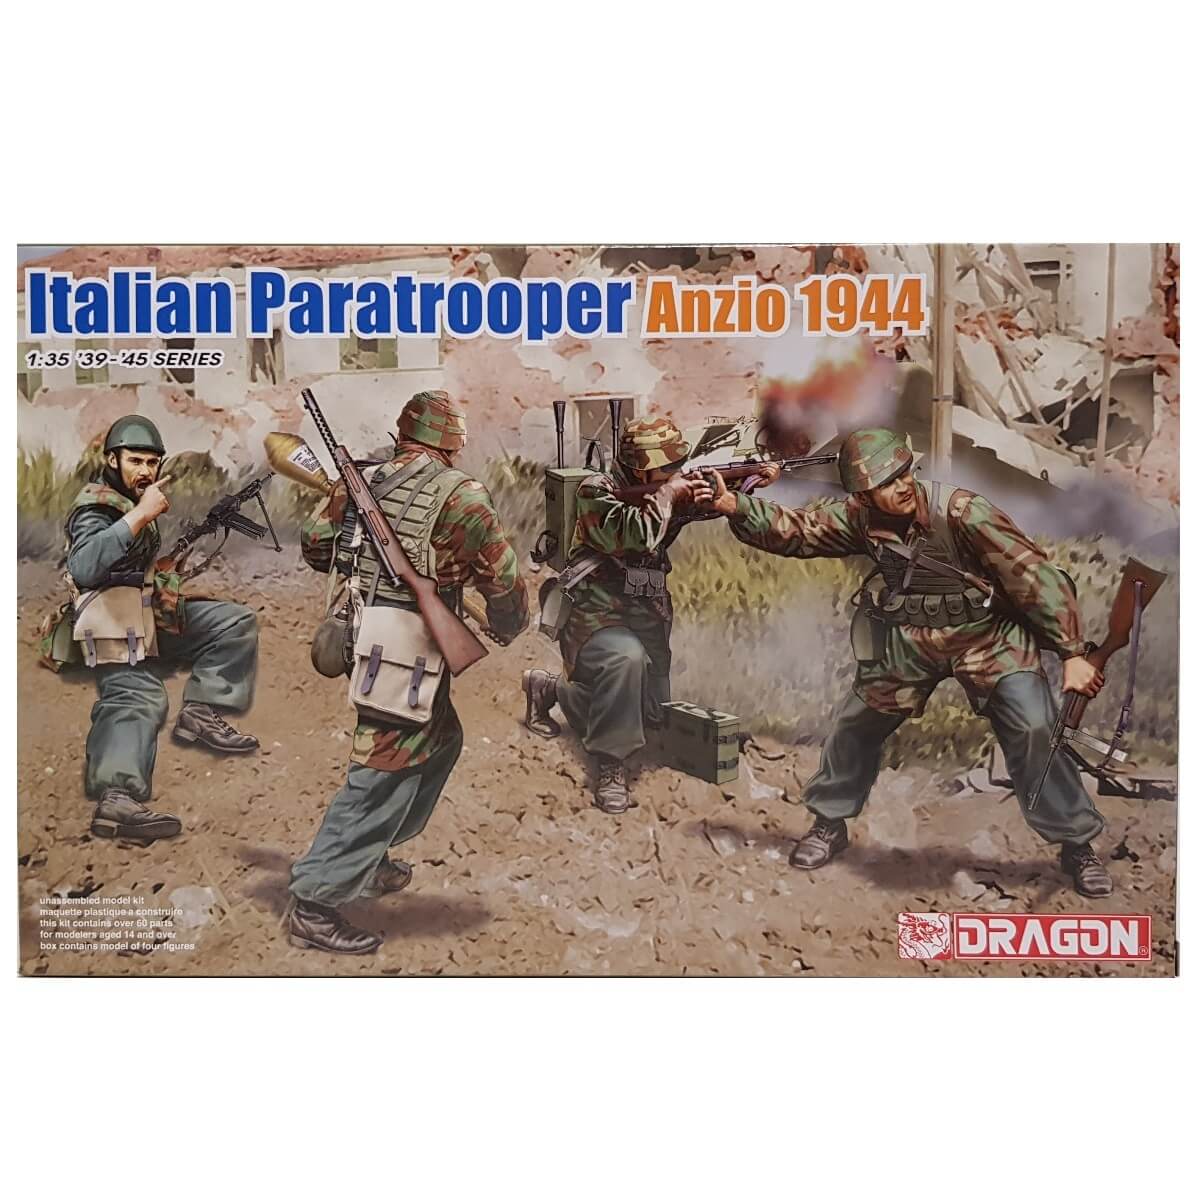 1:35 Italian Paratrooper Anzio 1944 - DRAGON